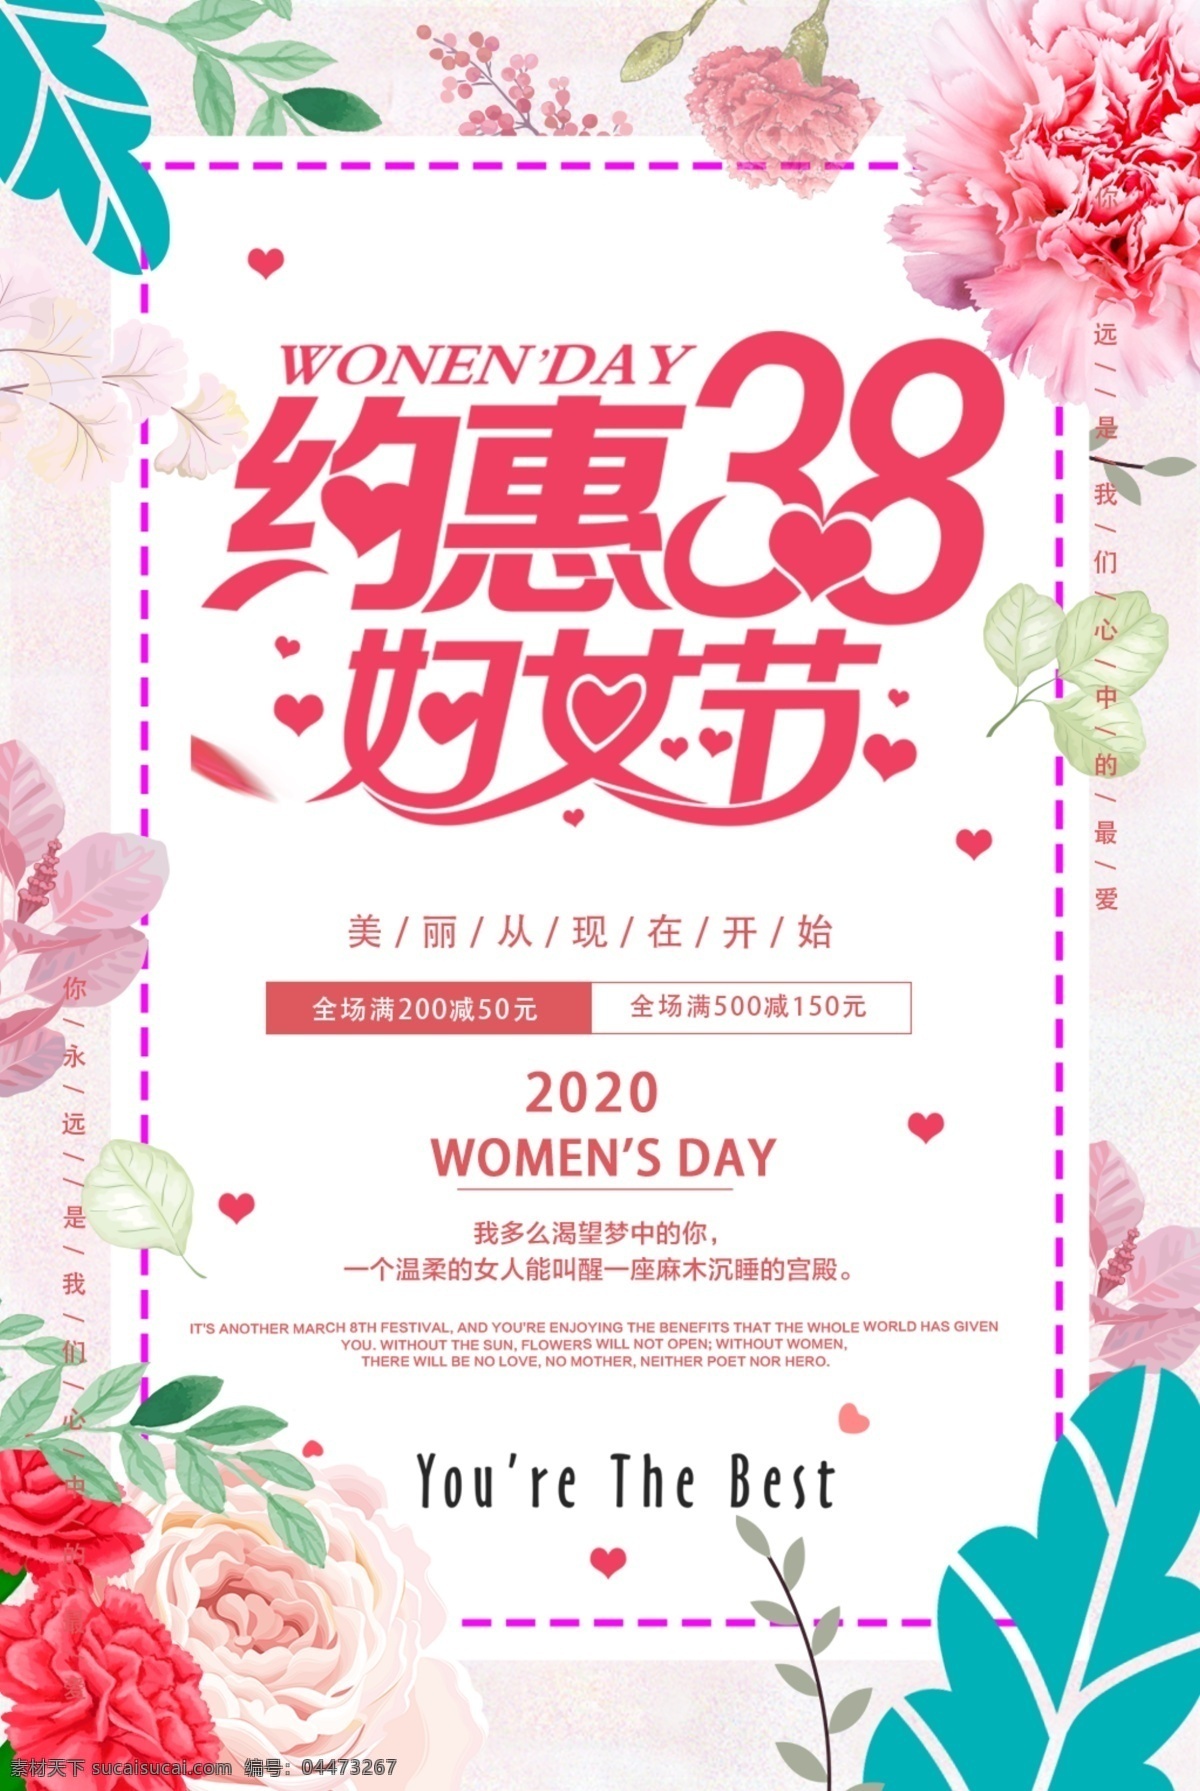 约 惠 38 妇女节 活动海报 约惠 38妇女节 活动海报设计 适用于 海报